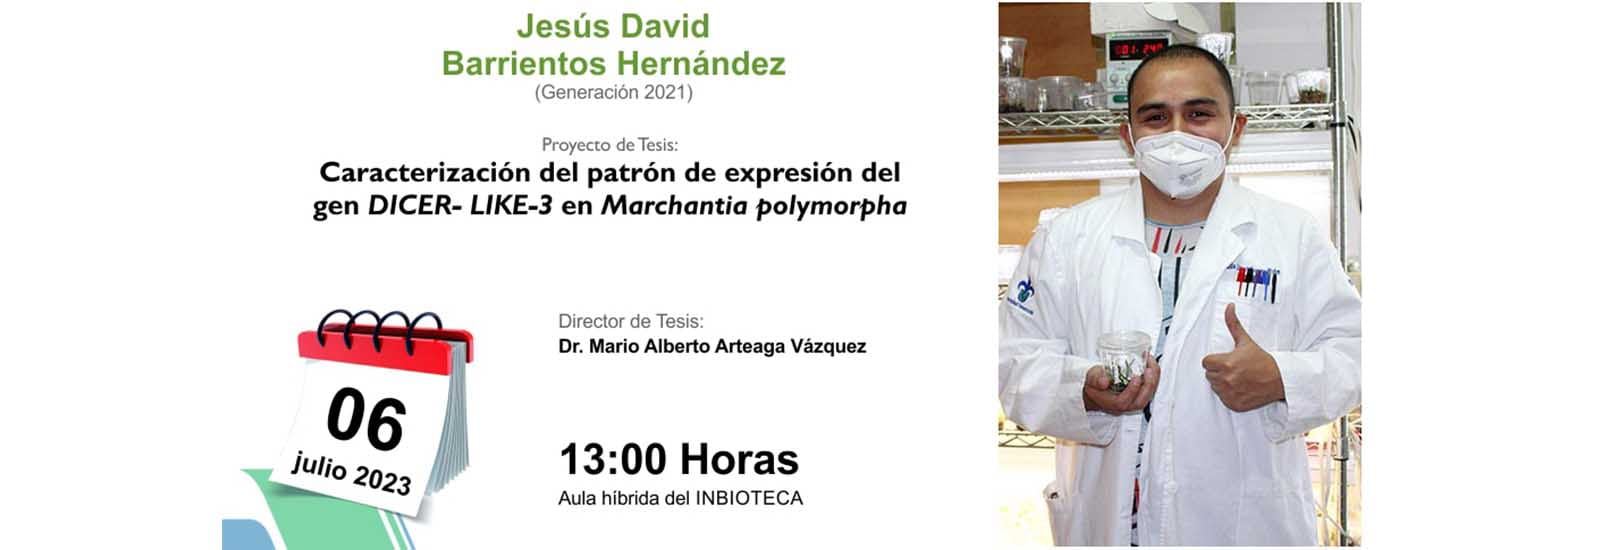 Imagen Invitación al Examen de Grado de Jesús David Barrientos Hernández